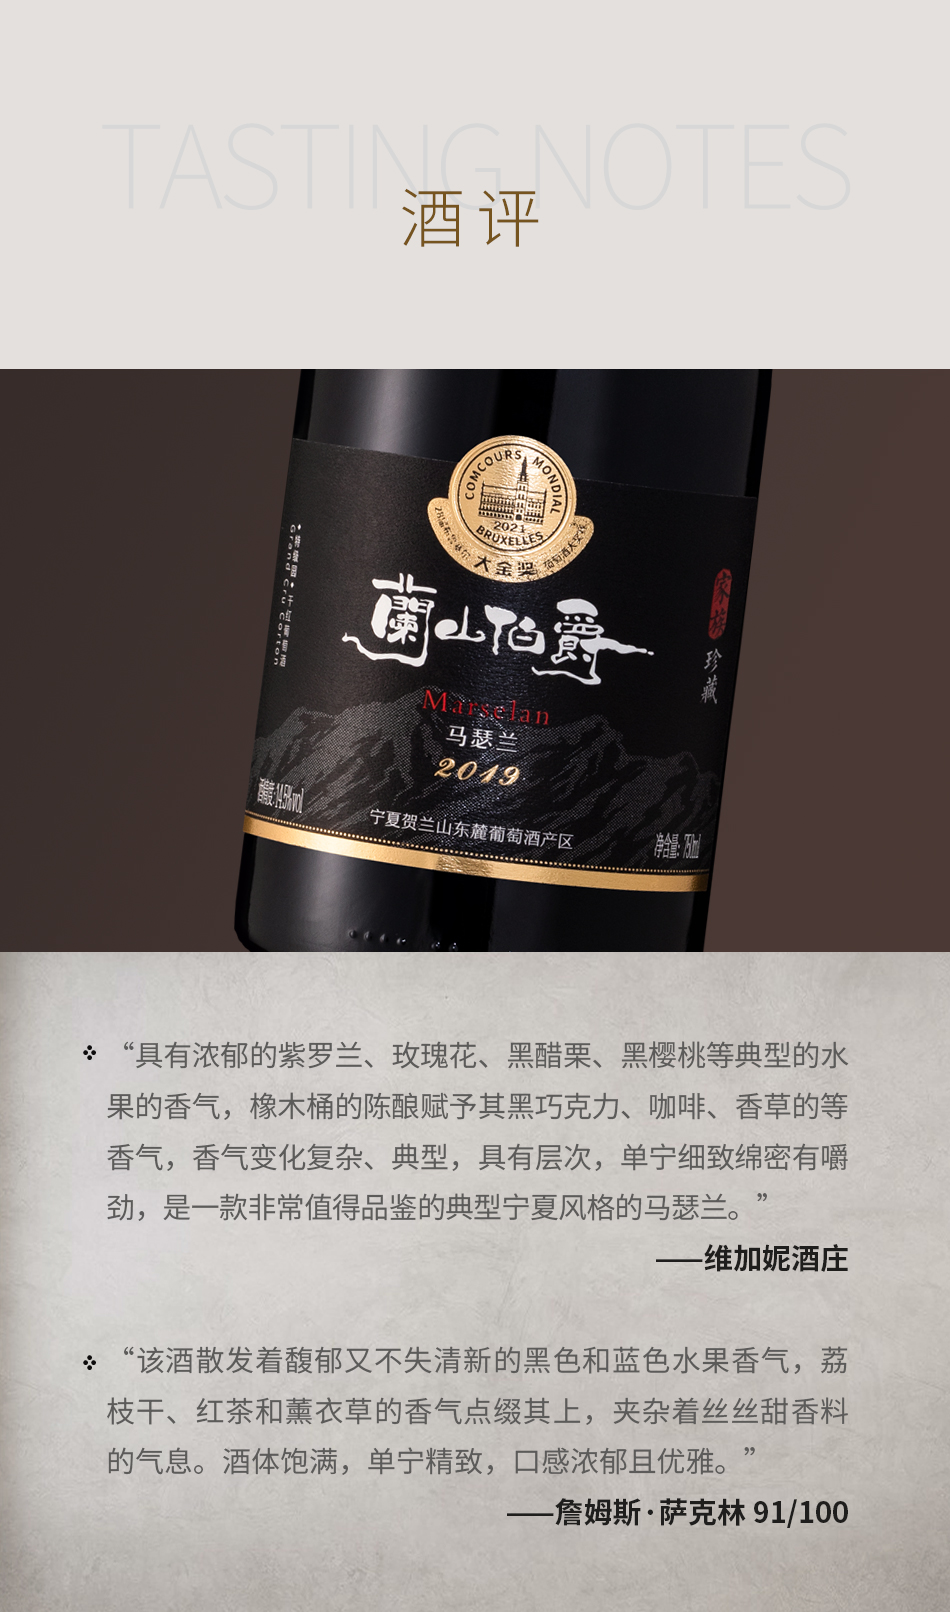 2019年维加妮酒庄兰山伯爵家族珍藏马瑟兰红葡萄酒